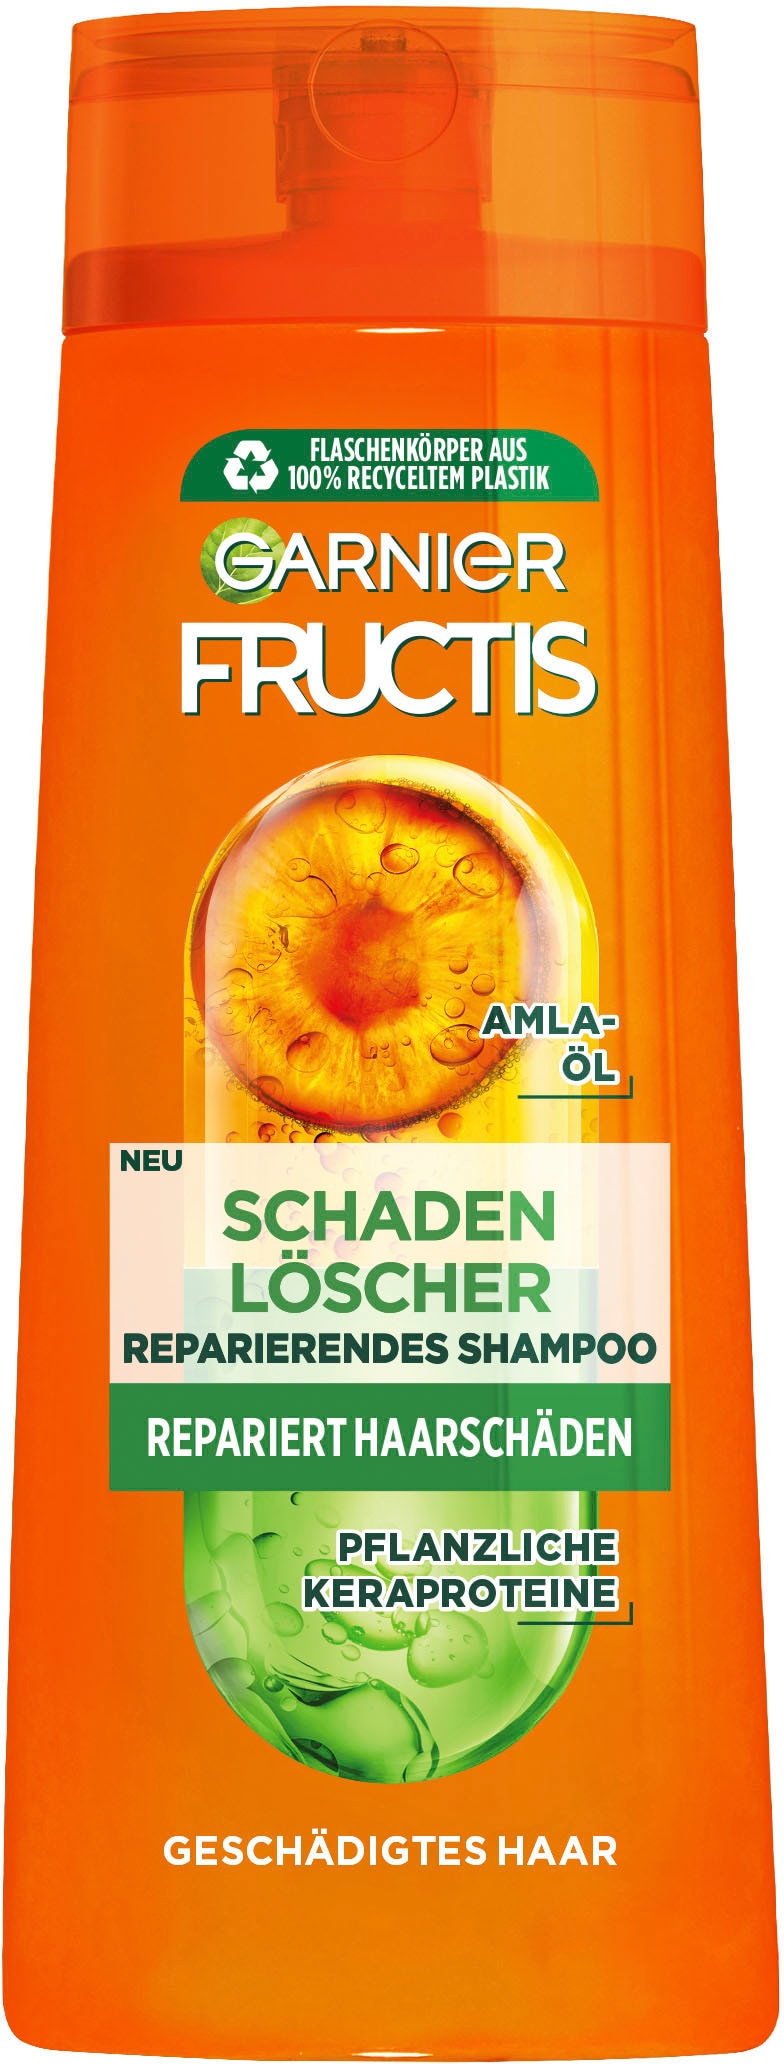 »Garnier Haarshampoo Online OTTO Shampoo« Shop GARNIER im Fructis Schadenlöscher